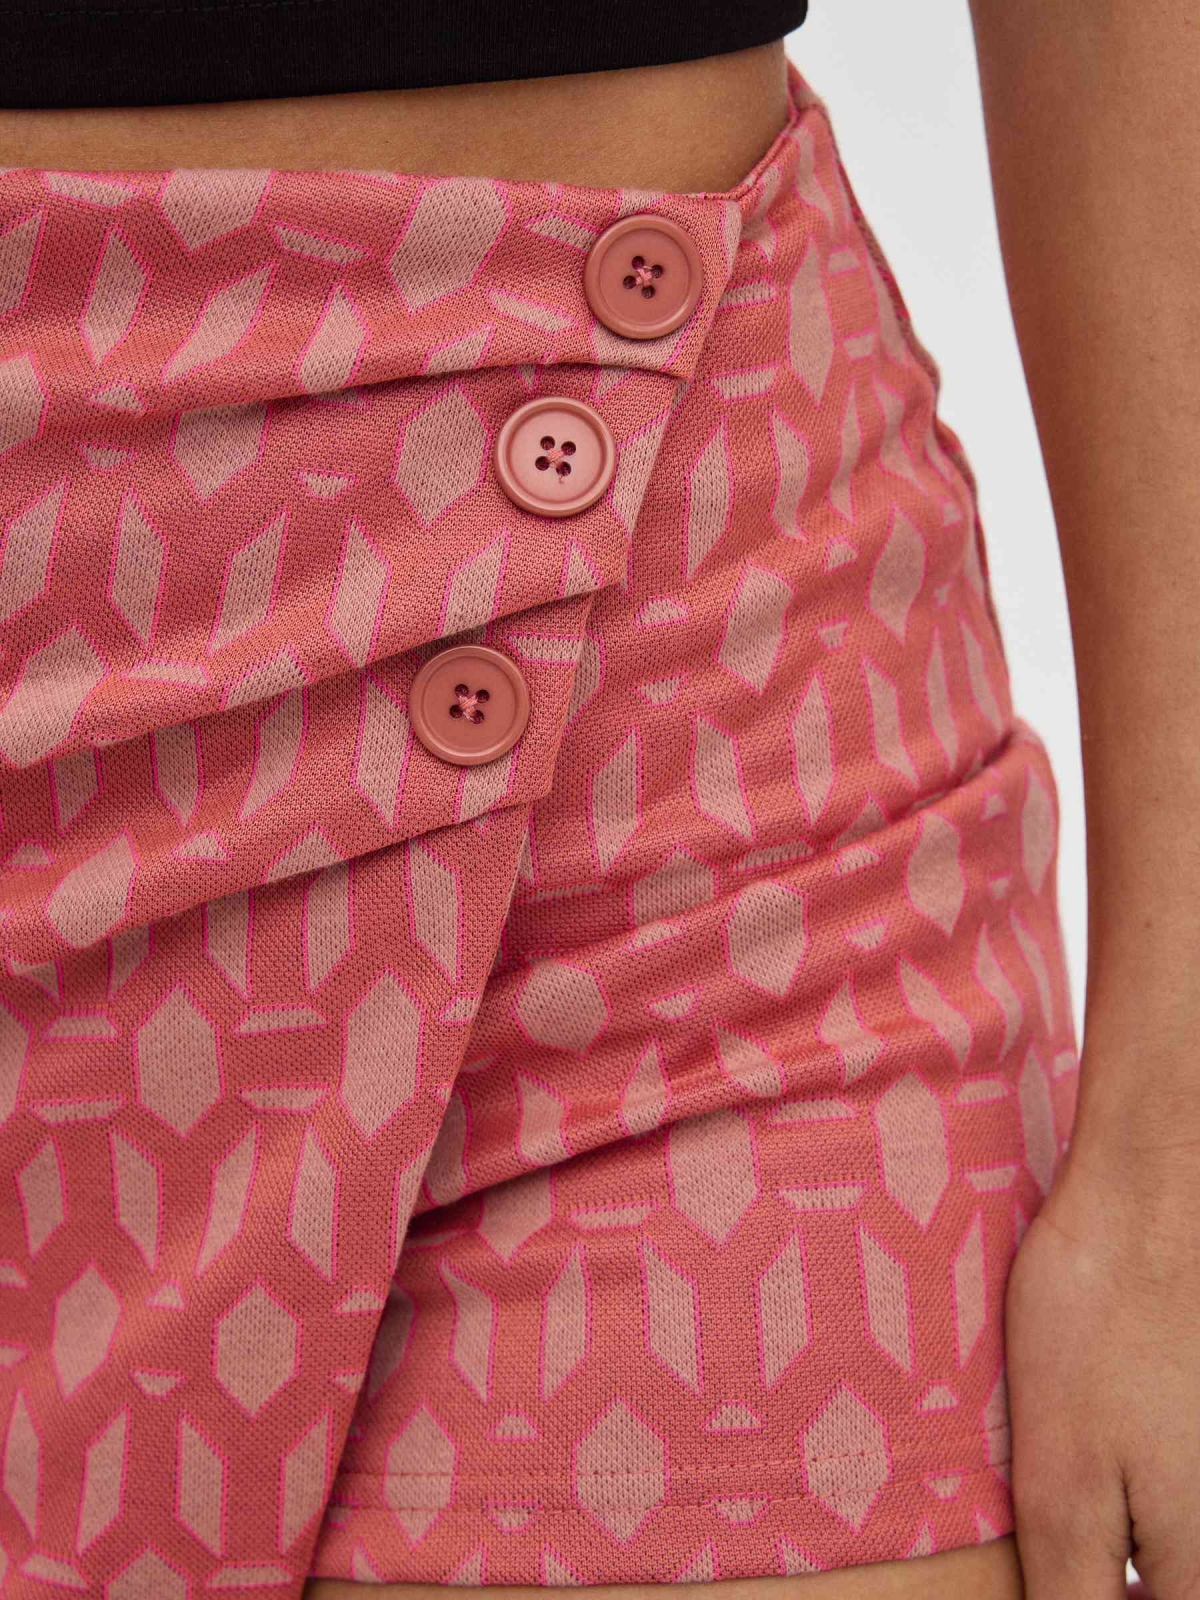 Geometric sarong skort powdered pink detail view